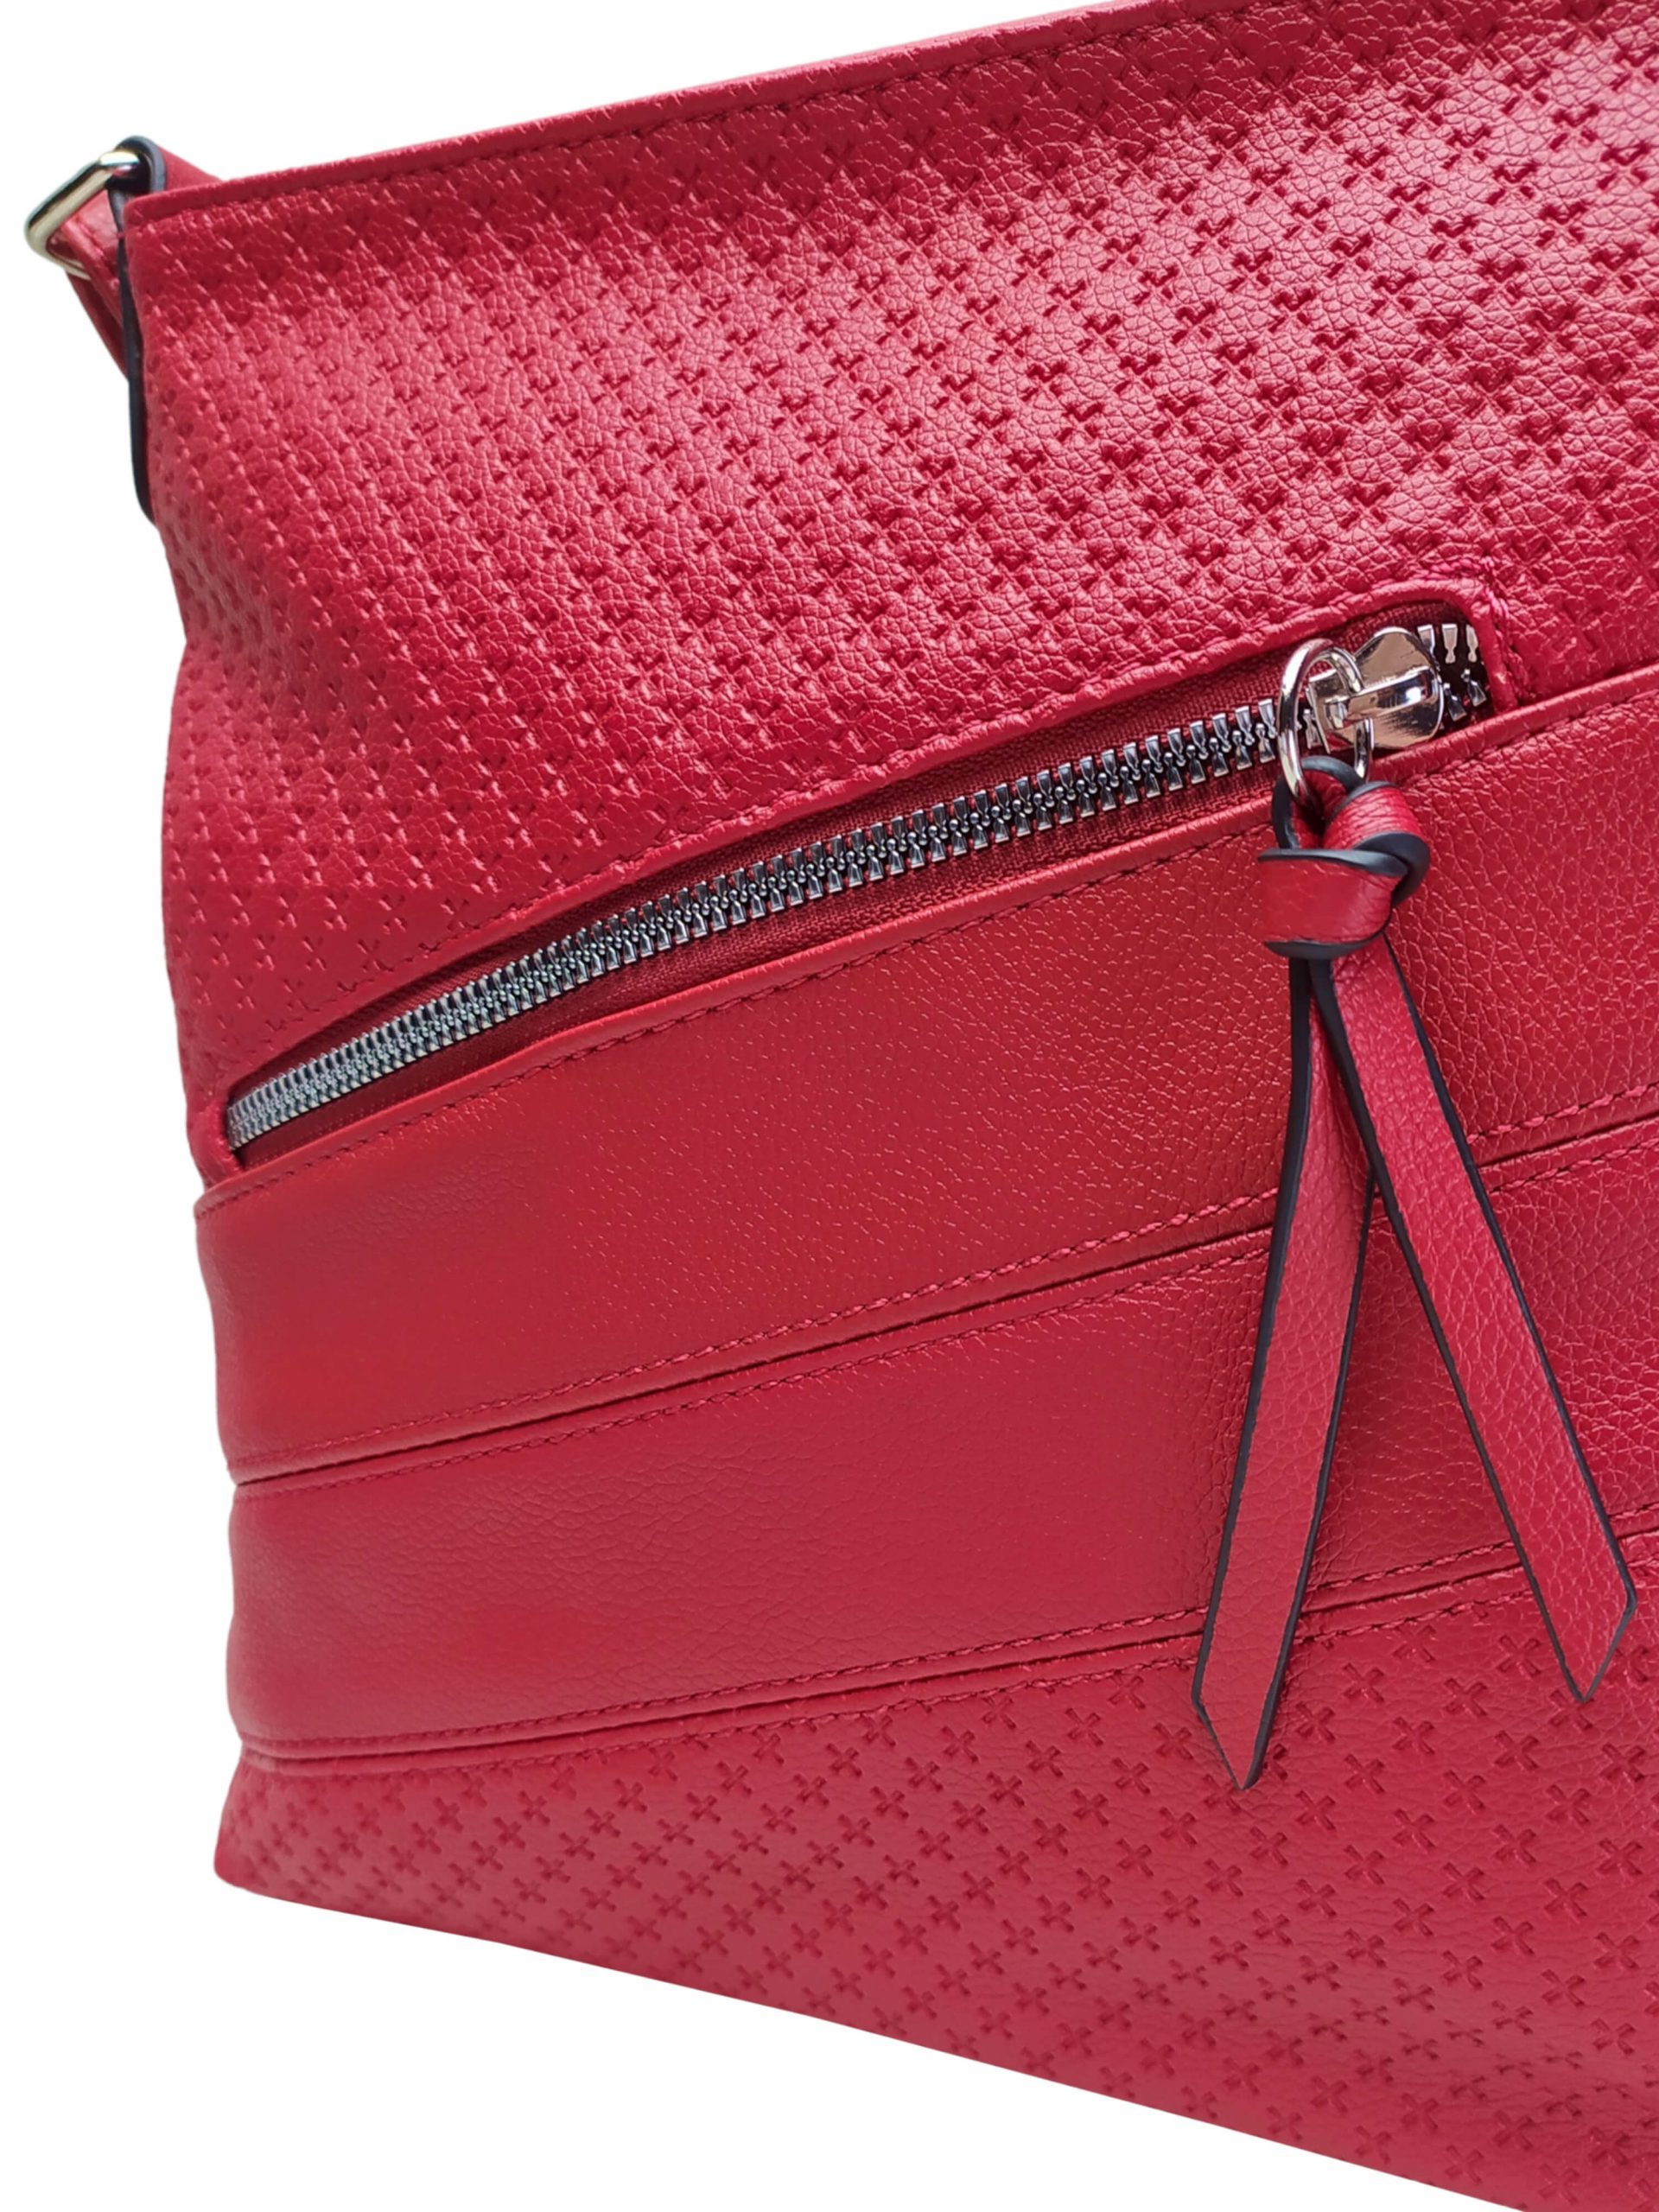 Tmavě červená crossbody kabelka s praktickou kapsou, Tapple, H21008, detail crossbody kabelky